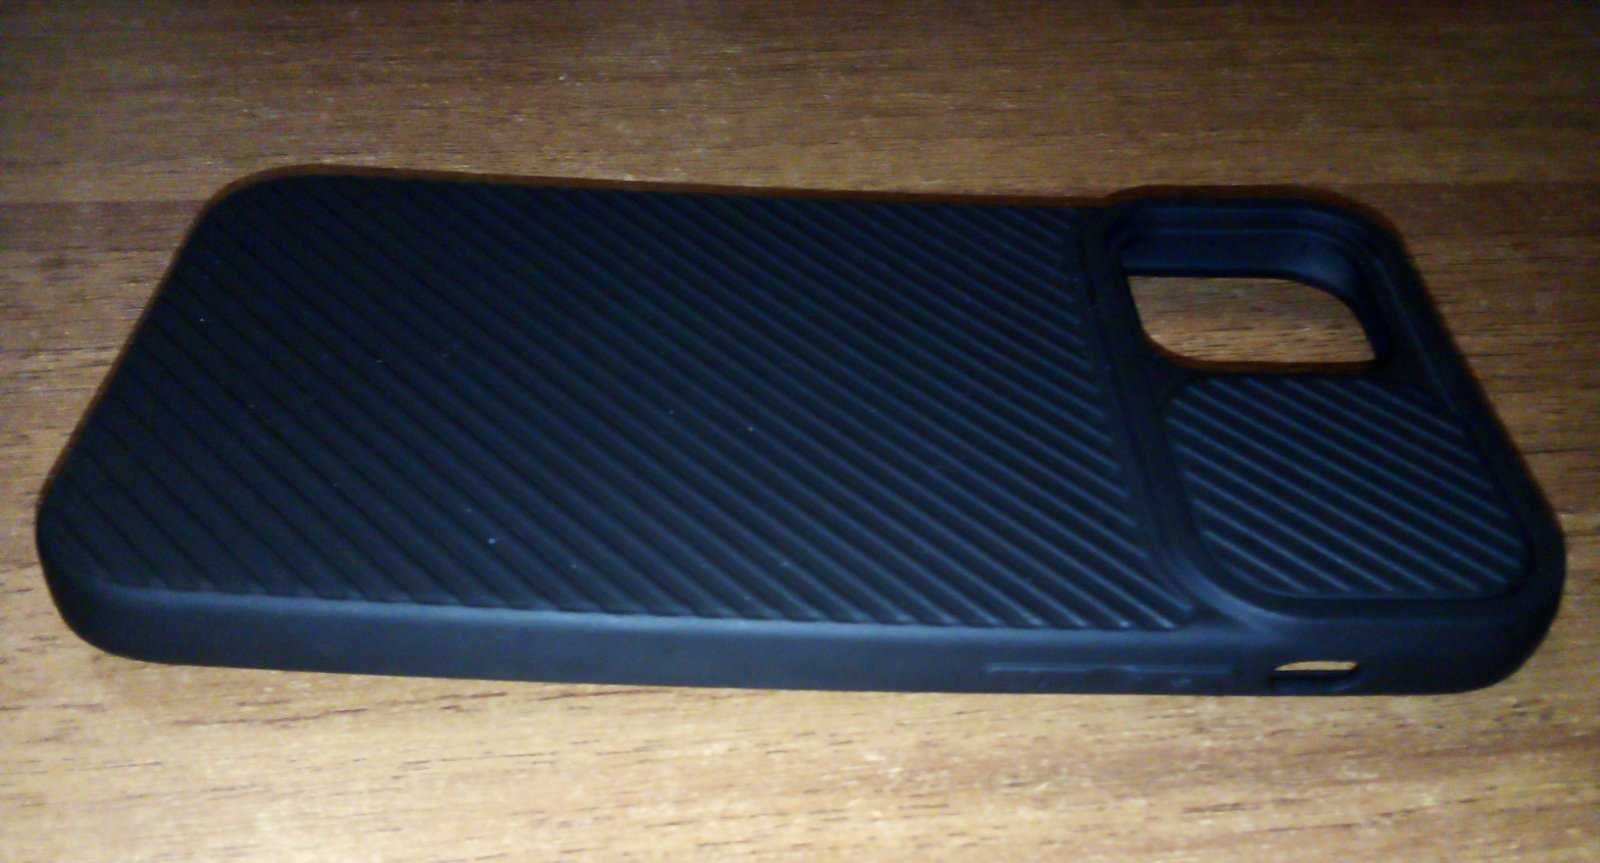 Бампер ребристый силиконовый на Apple iPhone 12 (6.1) чёрный